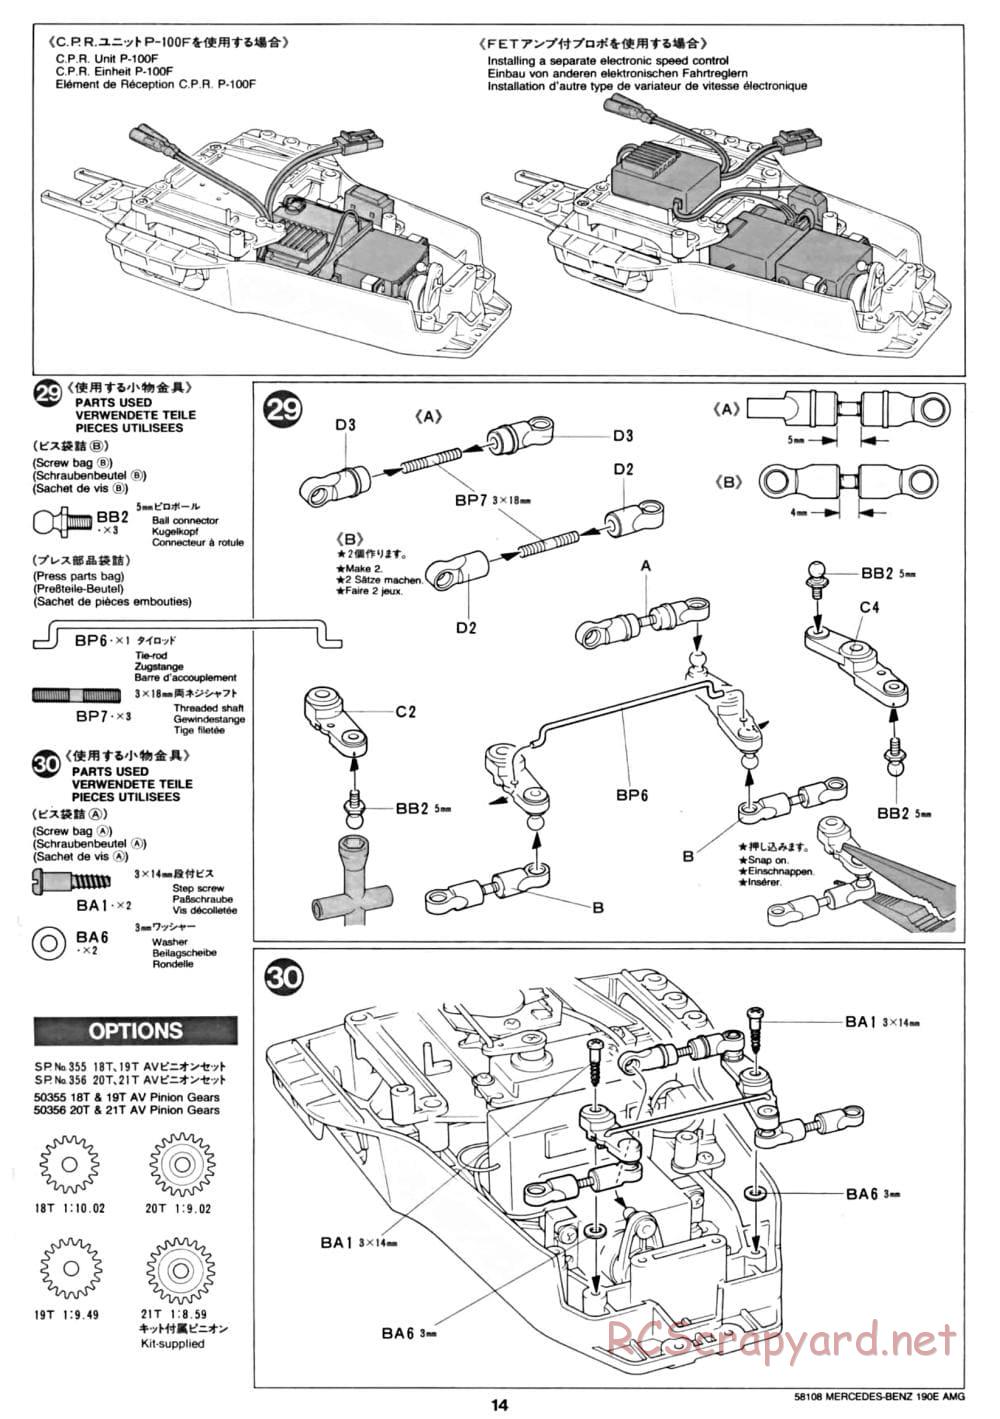 Tamiya - Mercedes Benz 190E Evo.II AMG - TA-01 Chassis - Manual - Page 14